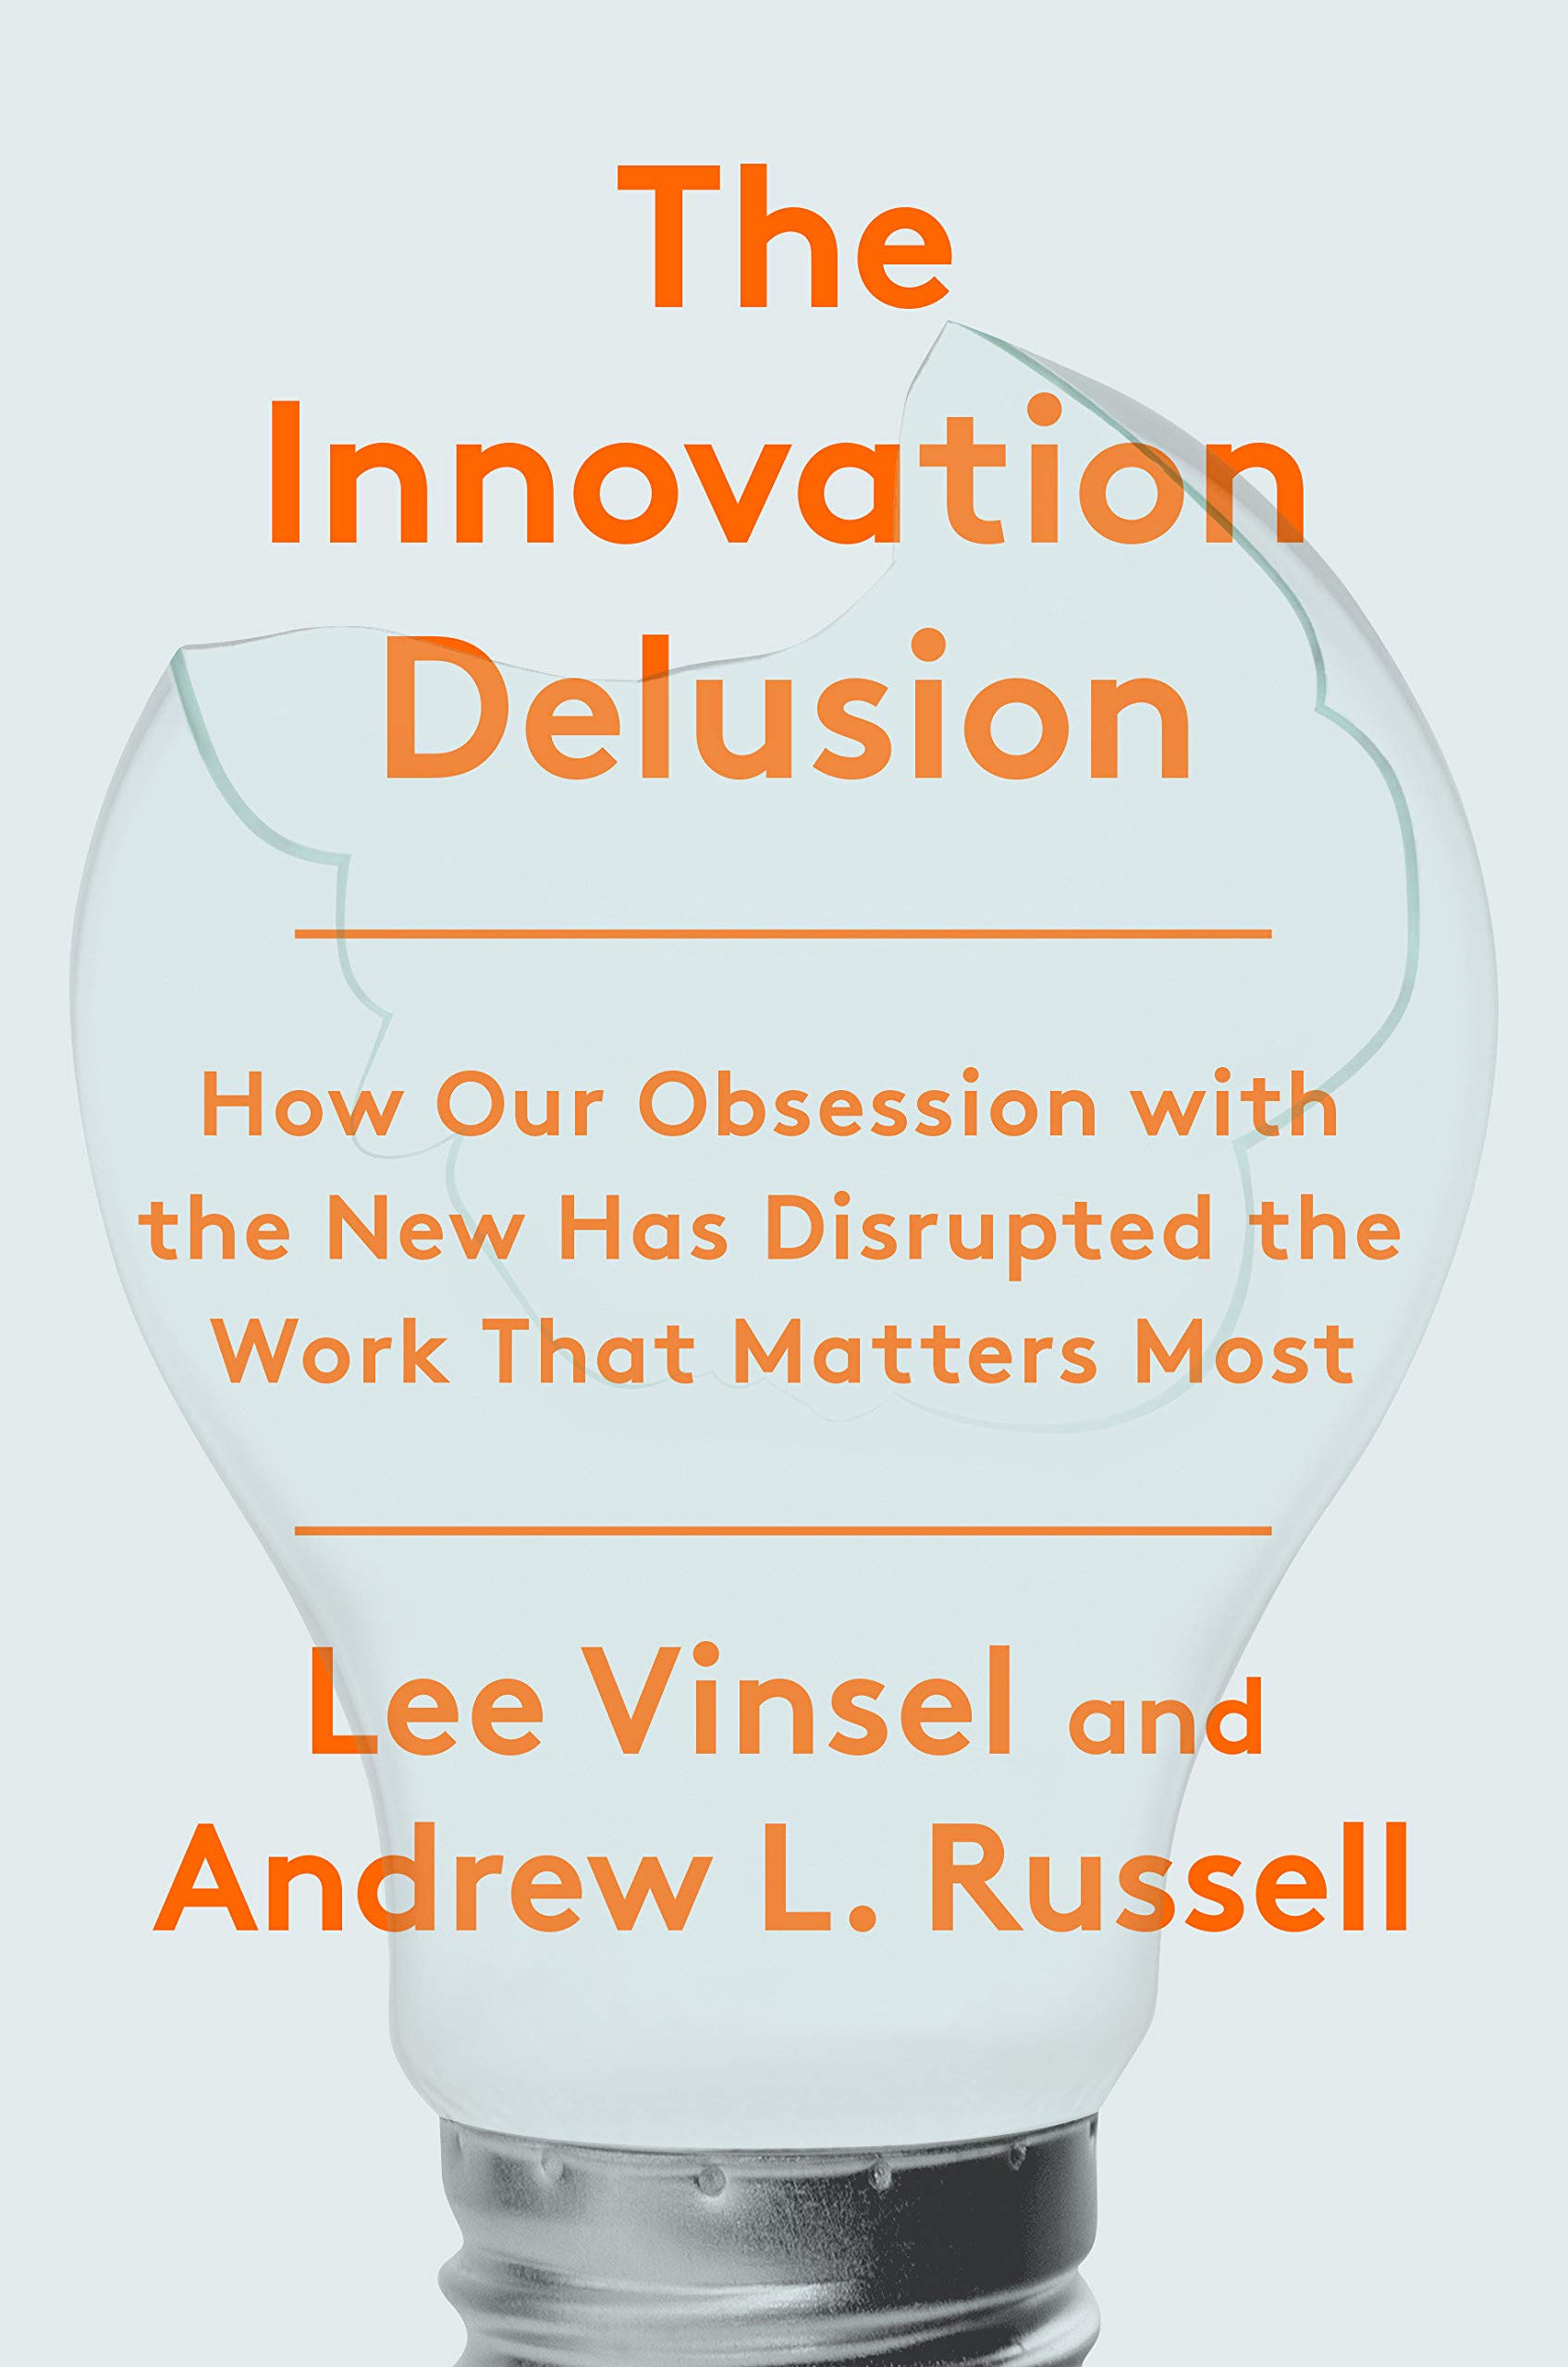 Kult innowacji szkodzi (Lee Vinsel i Andrew L. Russel 